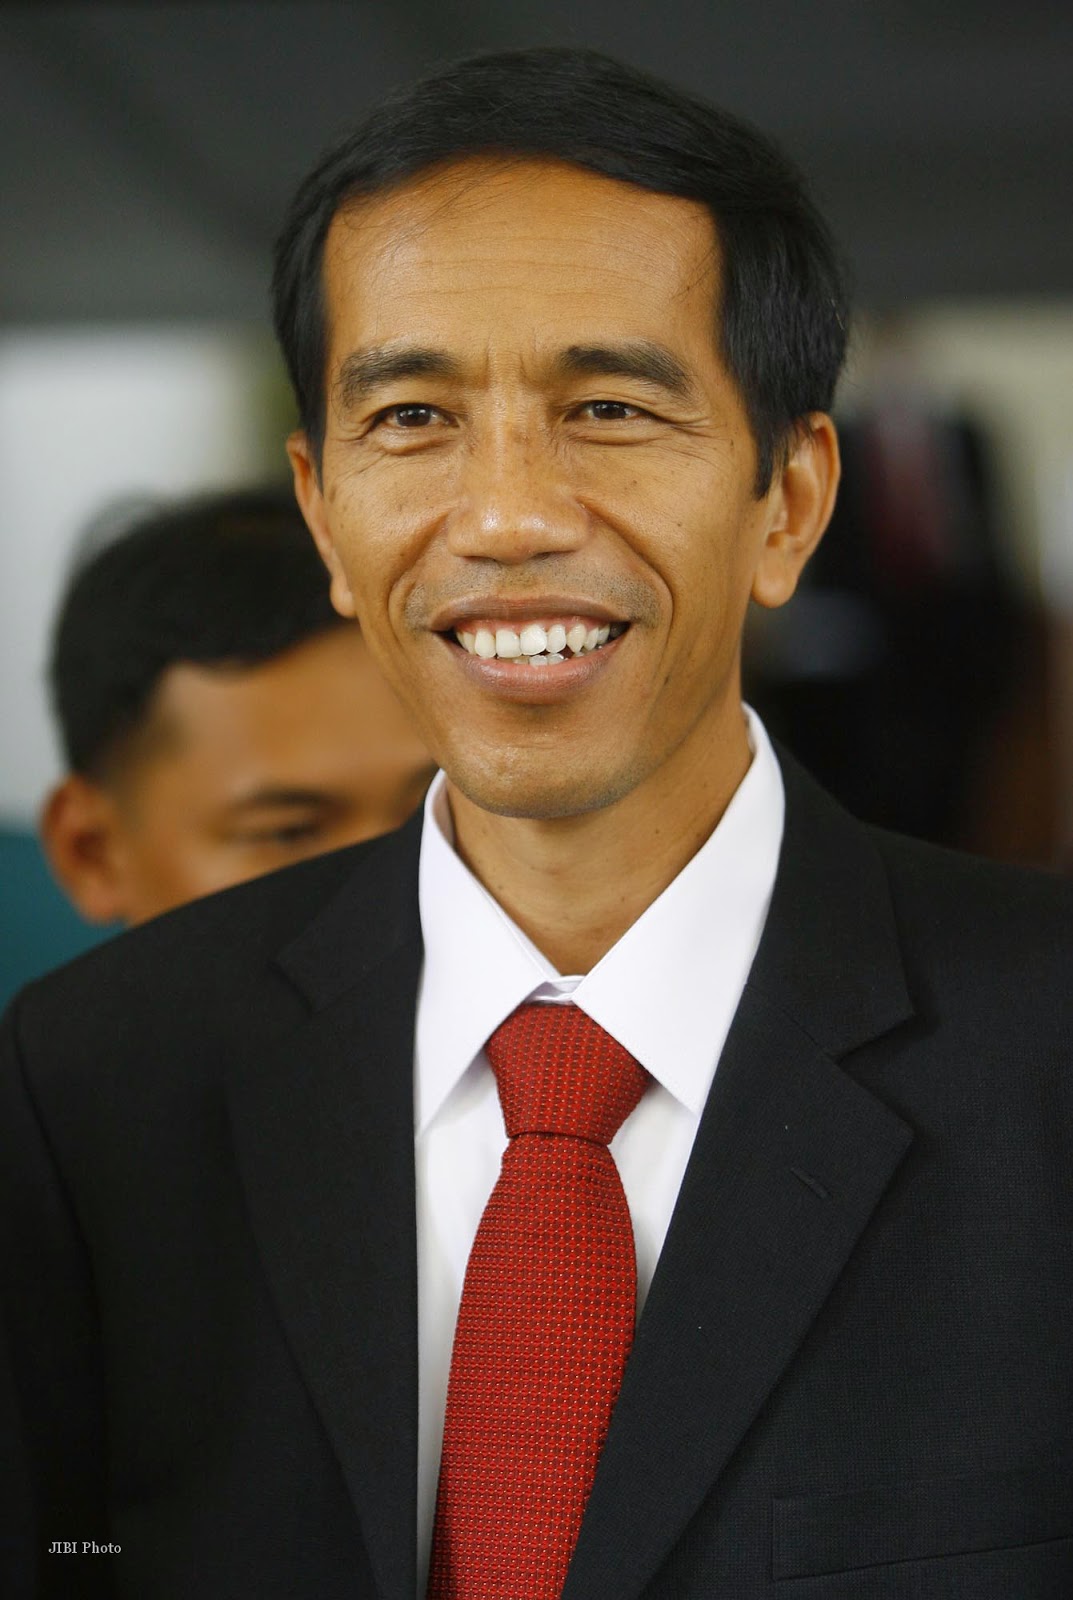 Fakta Unik dan Menarik Tentang Jokowi dan Prabowo